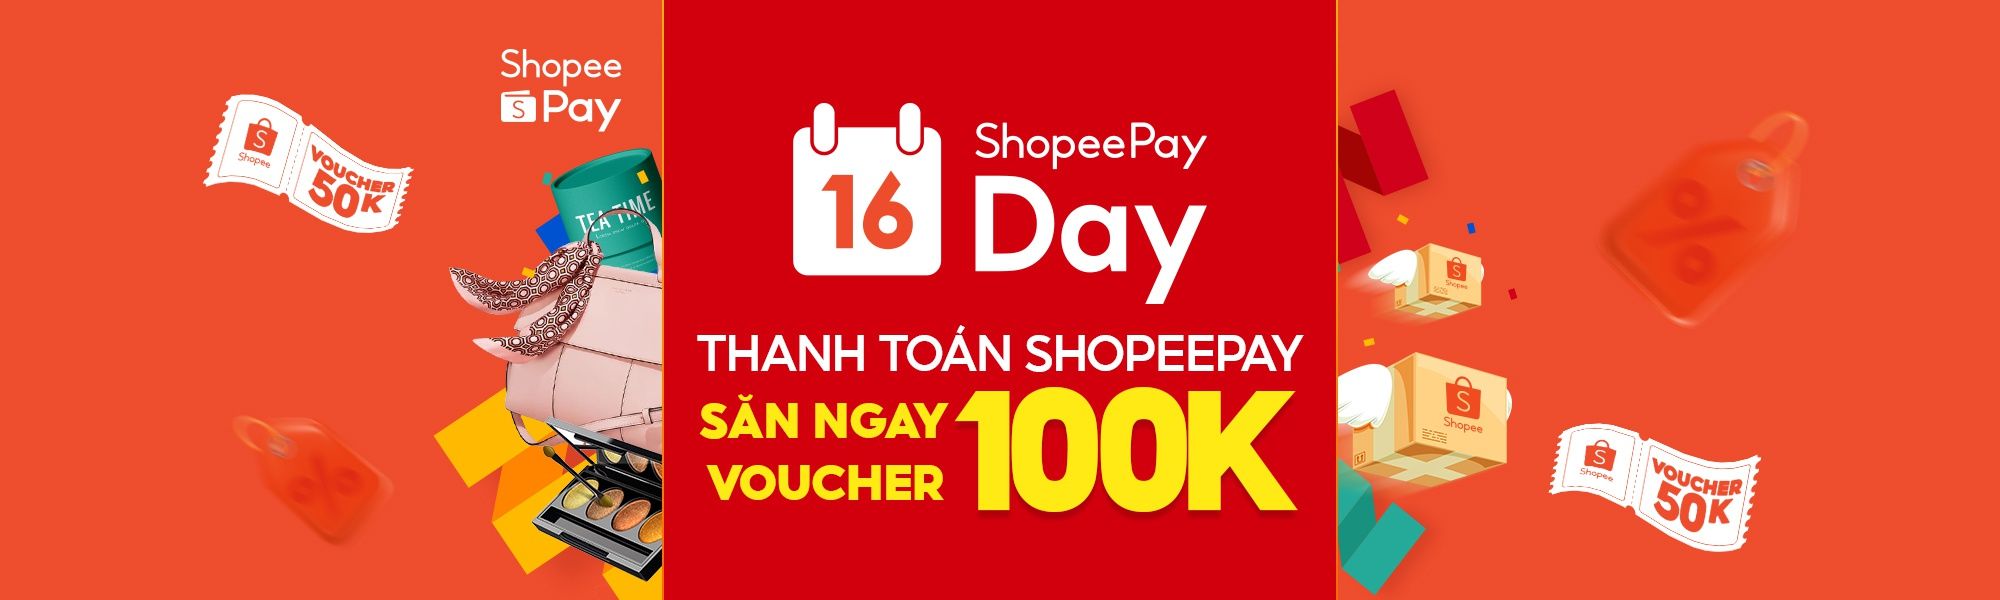 ShopeePay Day 16.04: Thanh toán ShopeePay, săn deal hot cho bé gói ICANKid "Chơi mà Học"